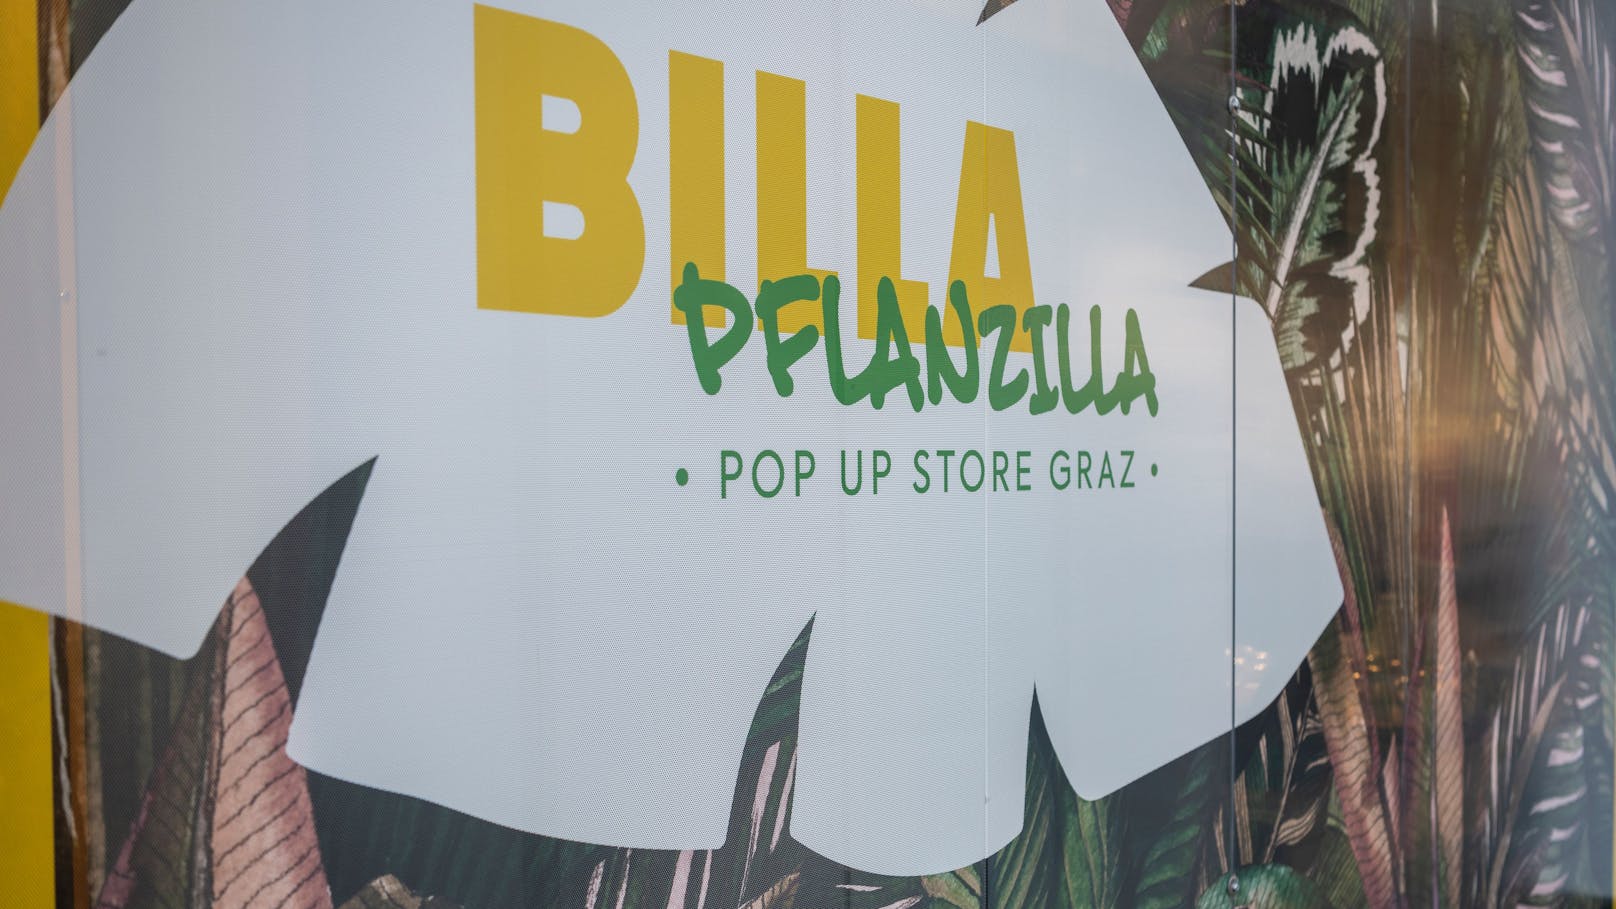 "Pflanzilla"! Veganer Billa-Markt startet jetzt in Graz